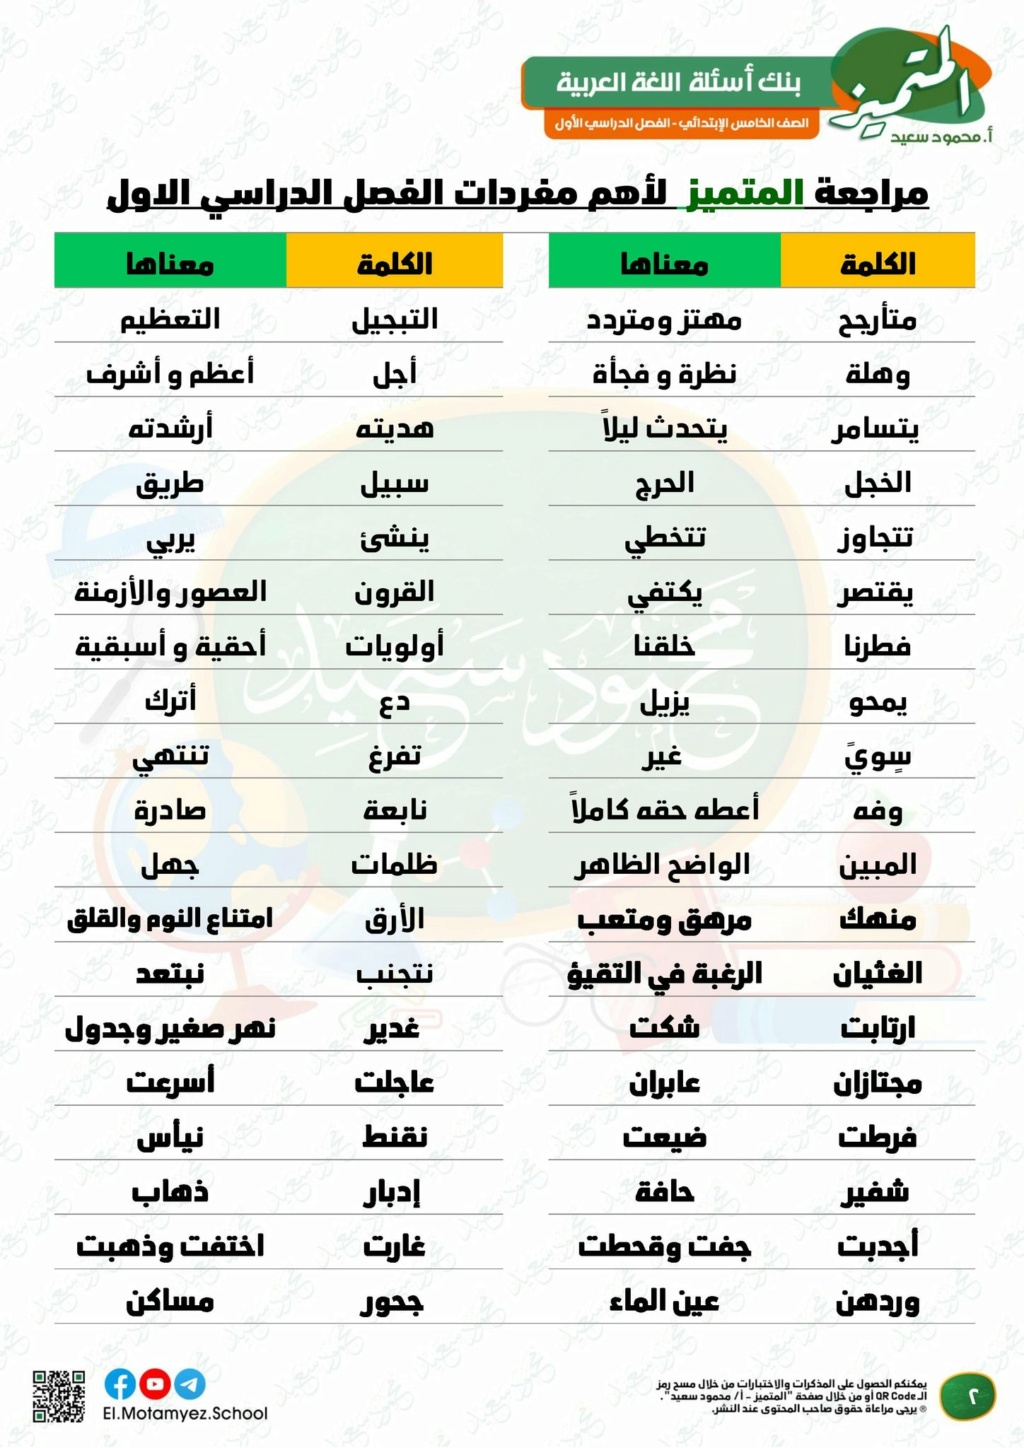  بنك اسئلة المتميز لغة عربية للصف الخامس الابتدائي ترم أول 2023 م/ محمود سعيد 2232